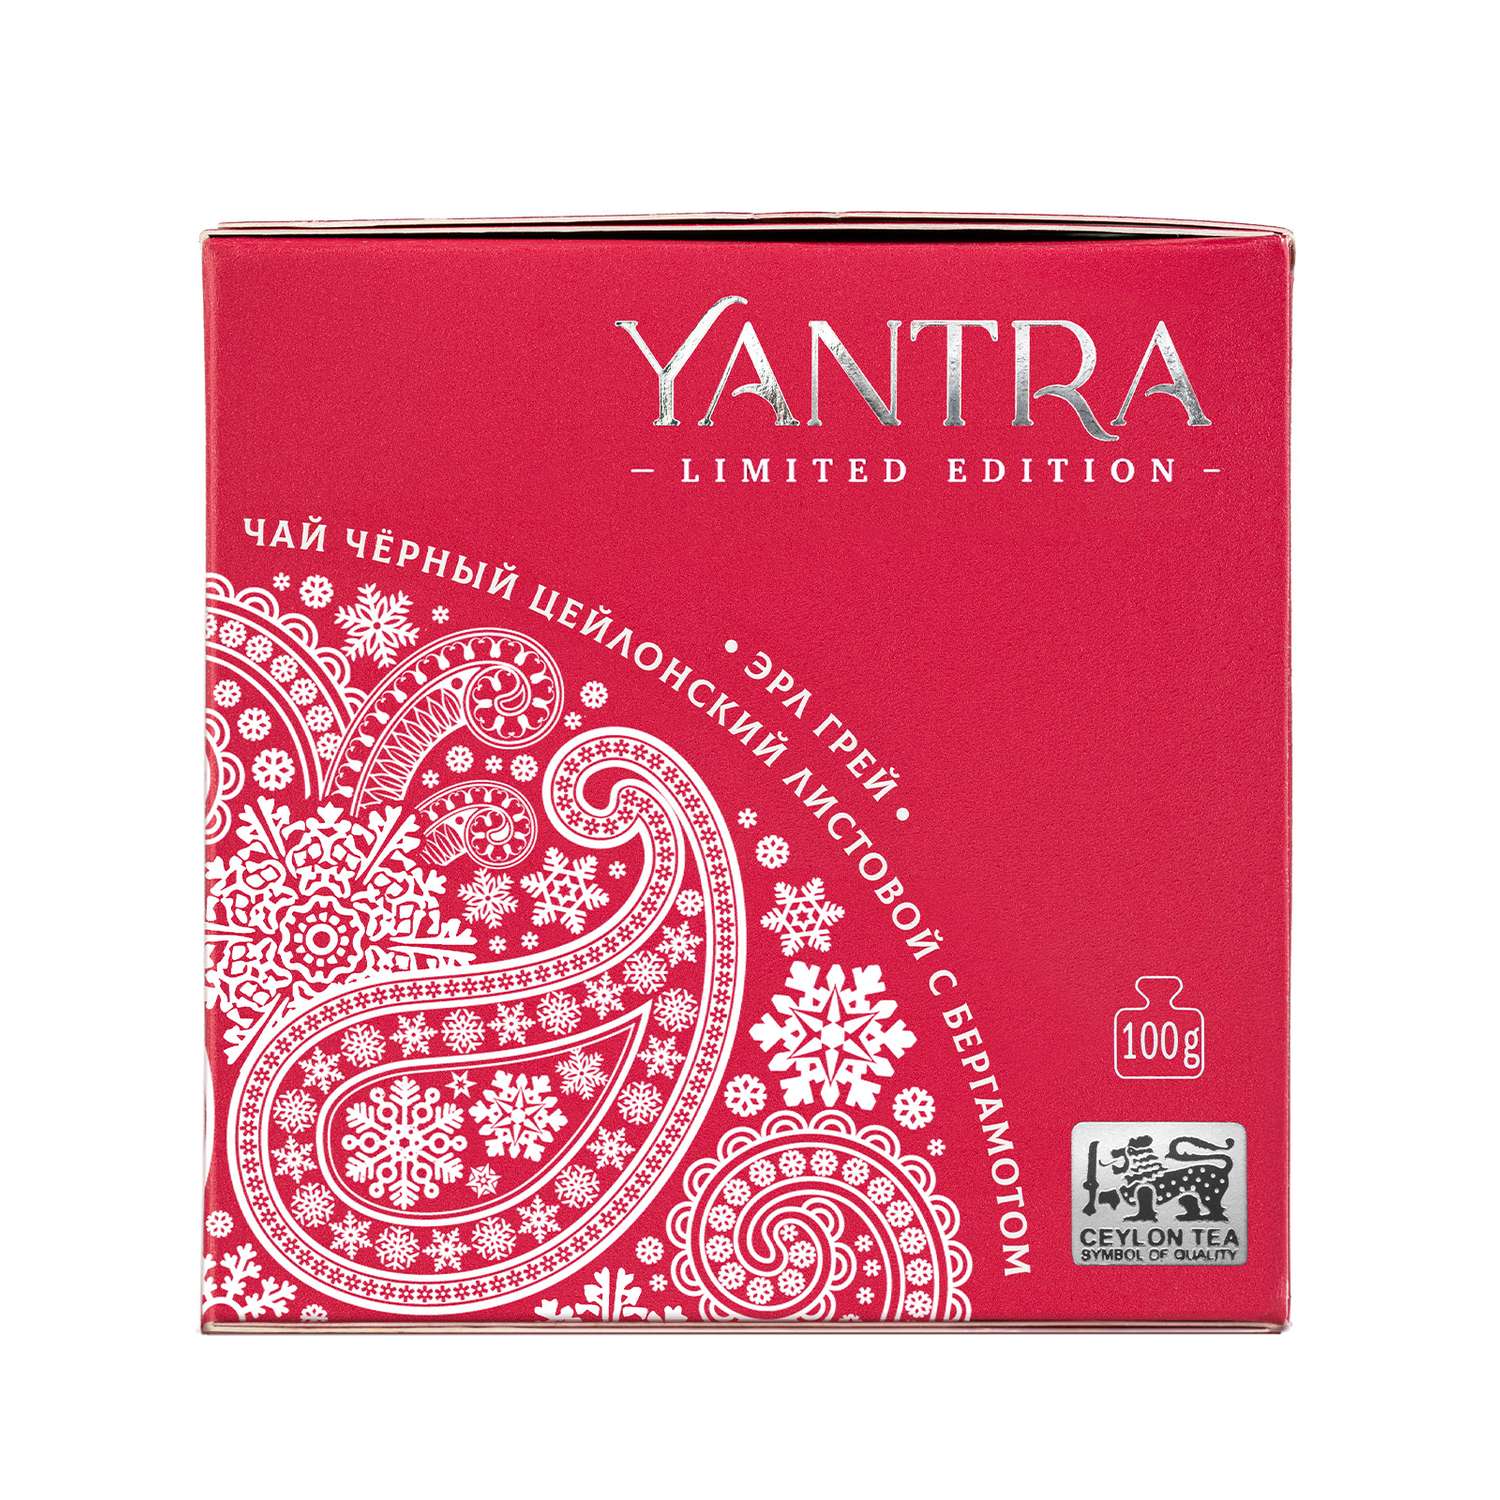 Чай Limited Edition Yantra чёрный листовой с бергамот Earl Grey стандарт FBOP 100 г - фото 6